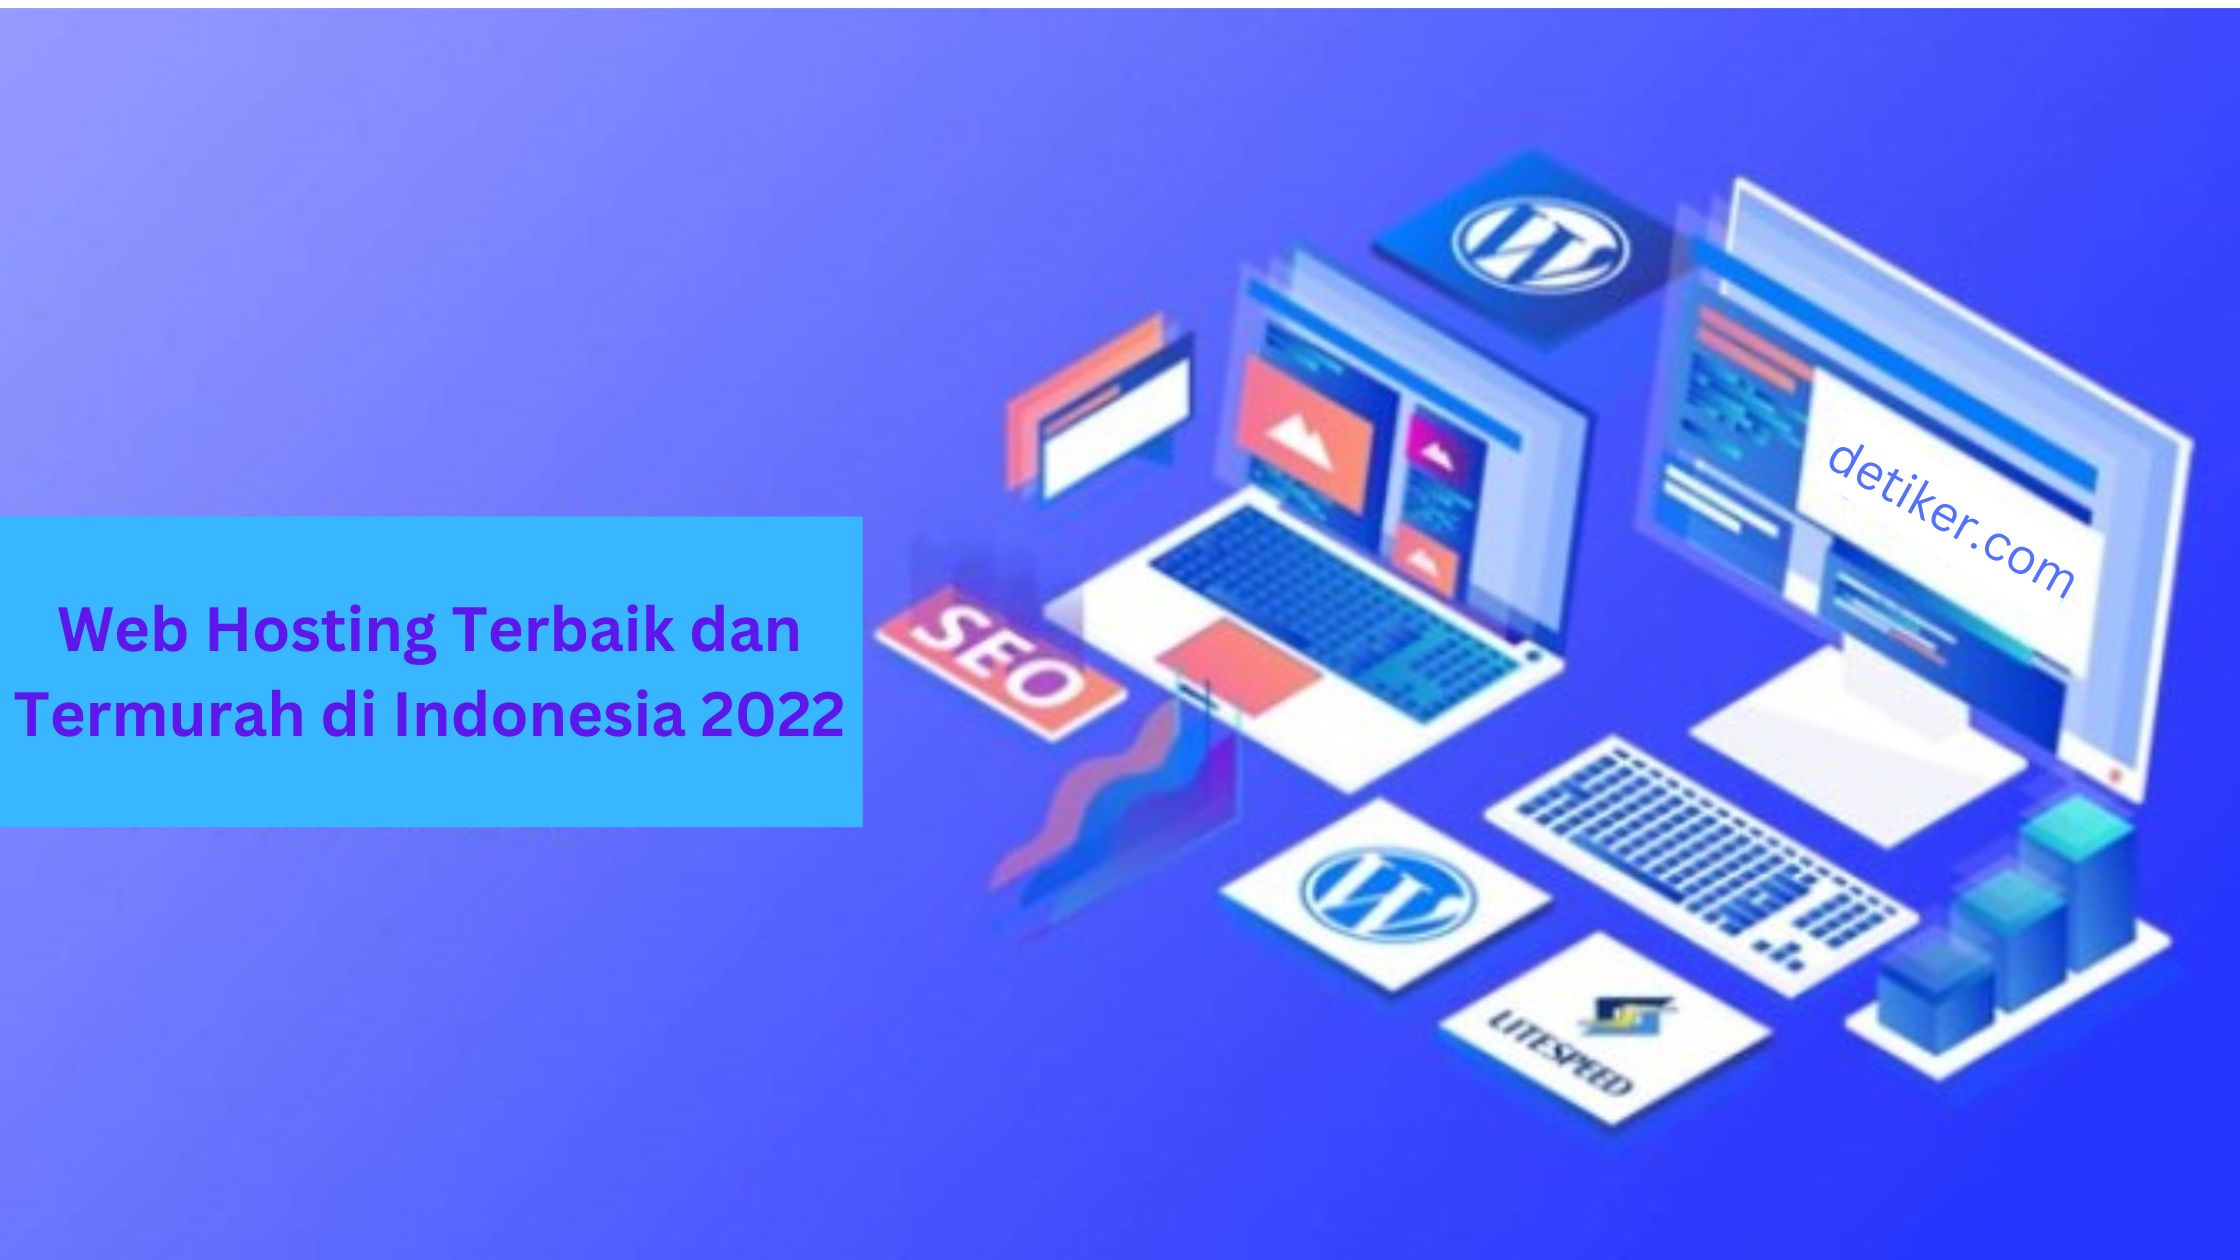 Web Hosting Terbaik dan Termurah di Indonesia 2022